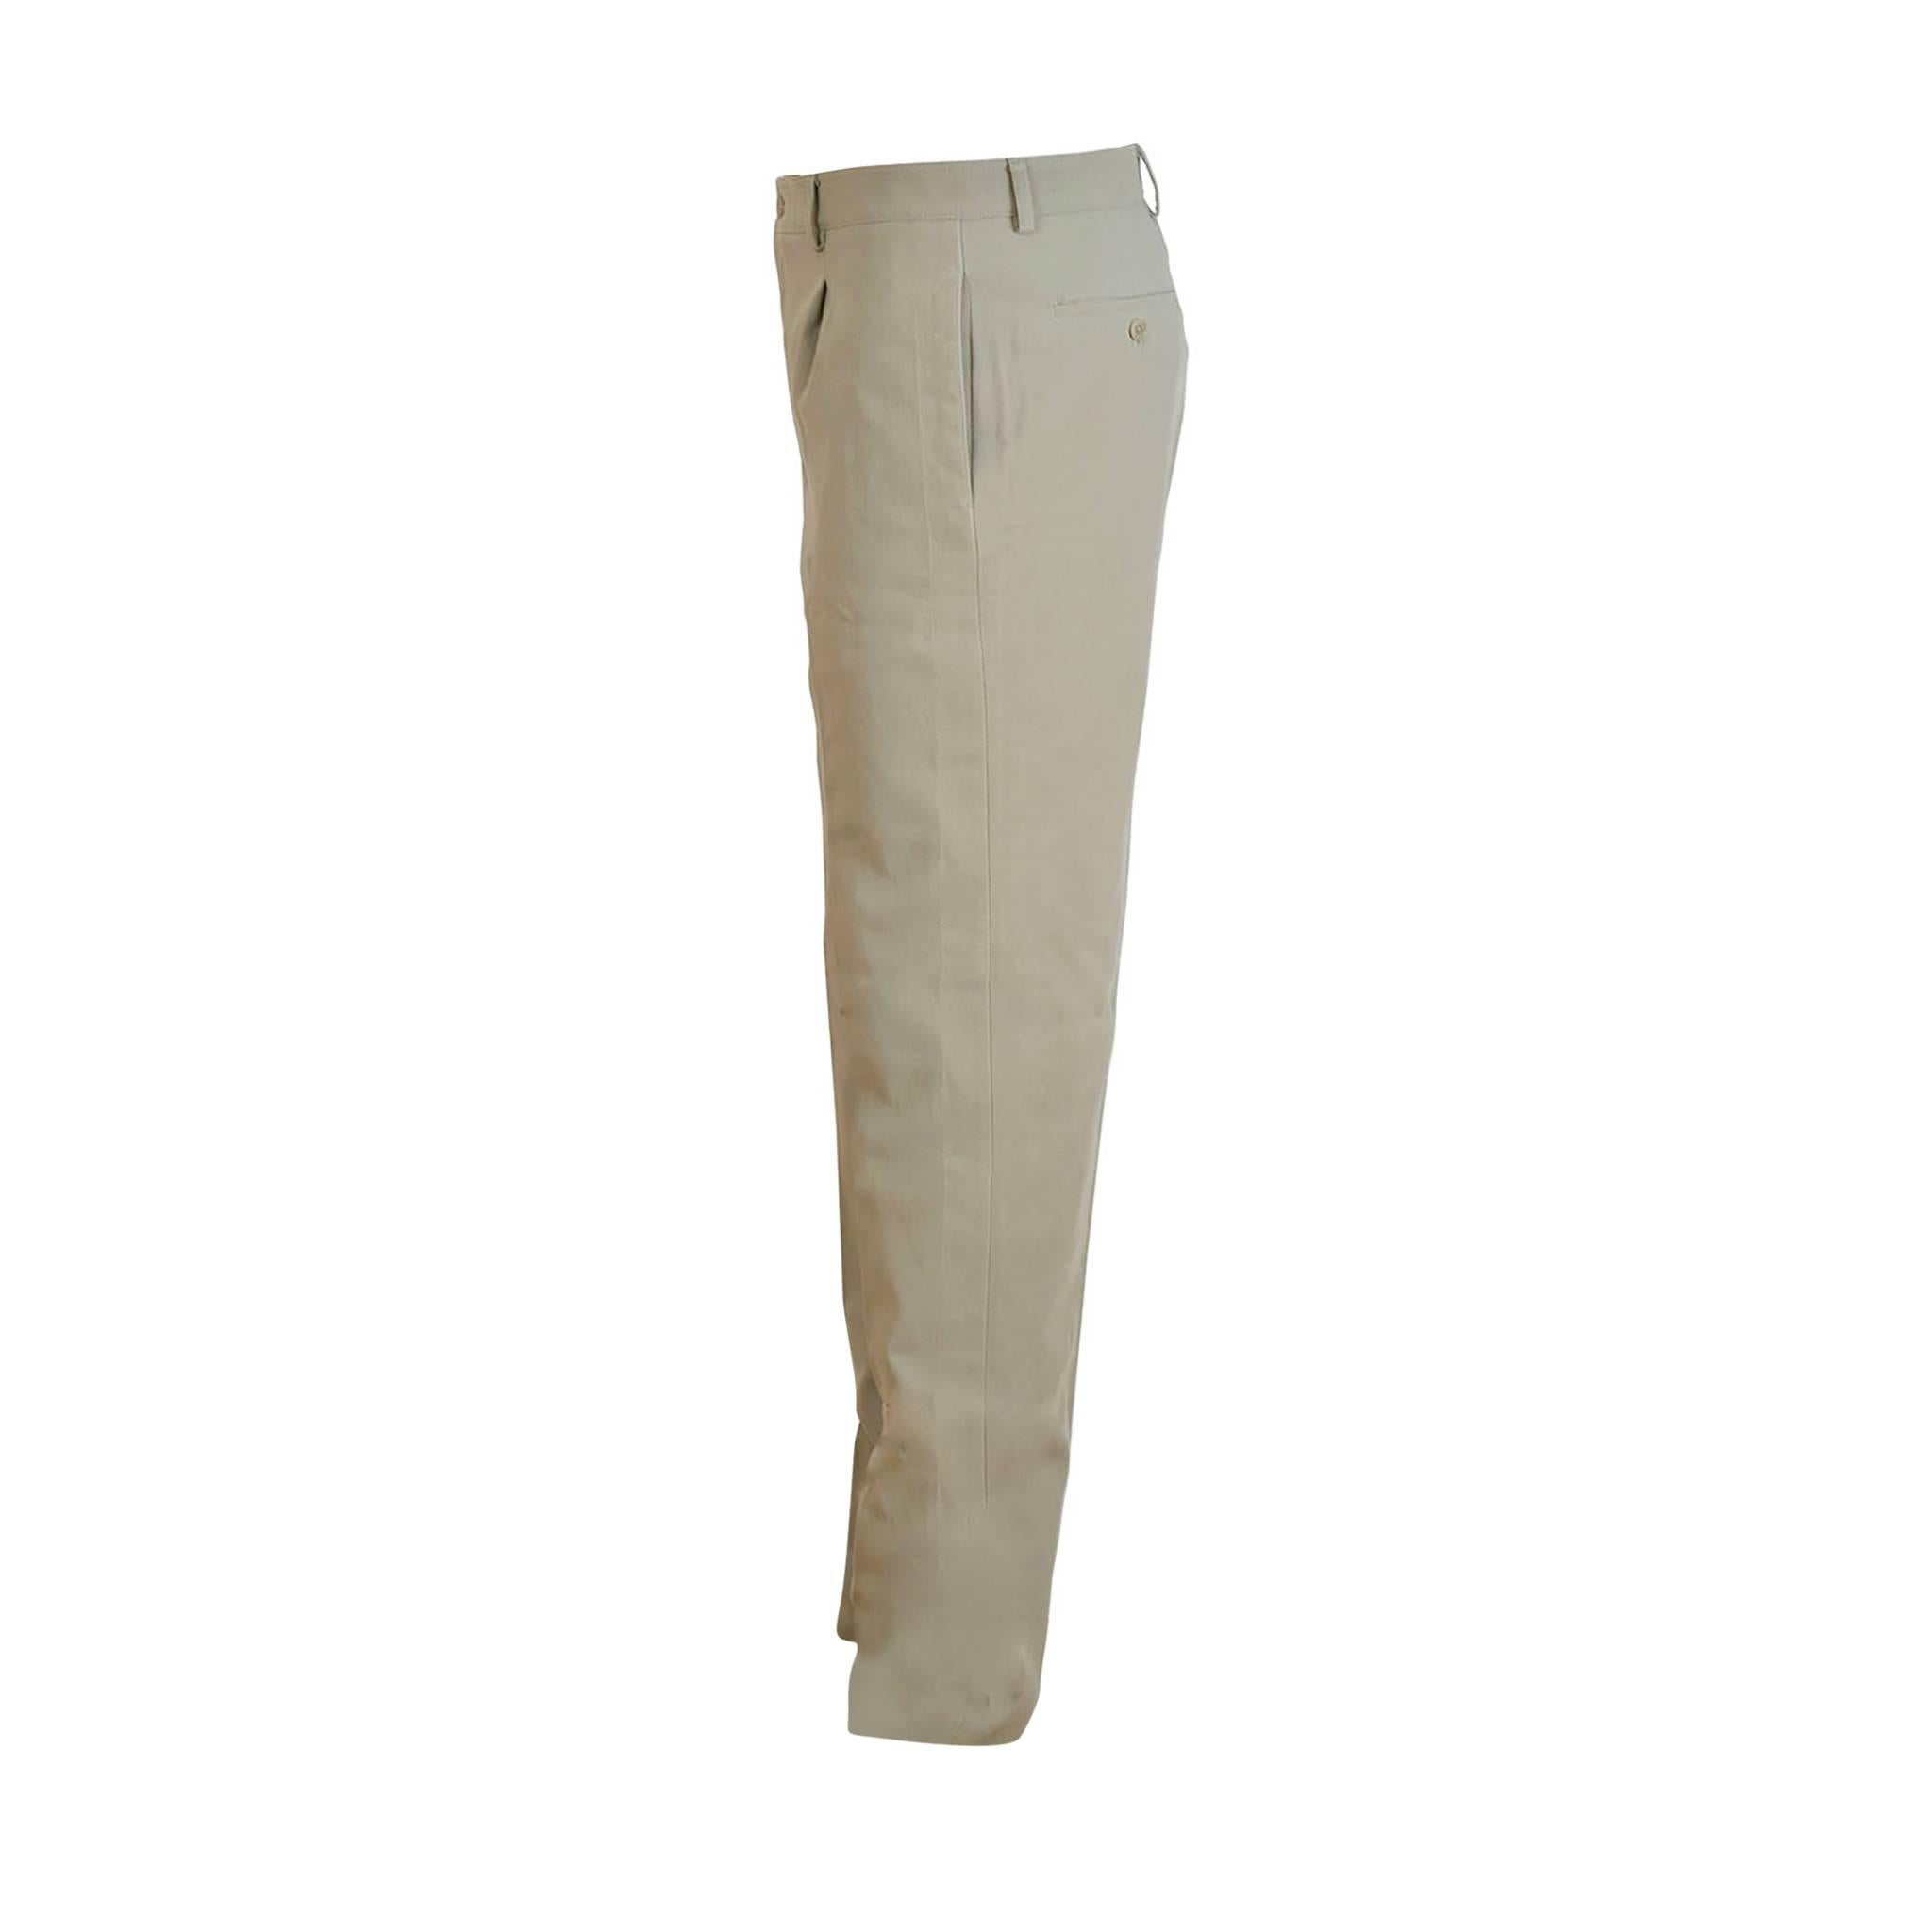 Brown Hermes Pants Palm Beach Surpique Gabardine Sable Color Size 44. For Sale